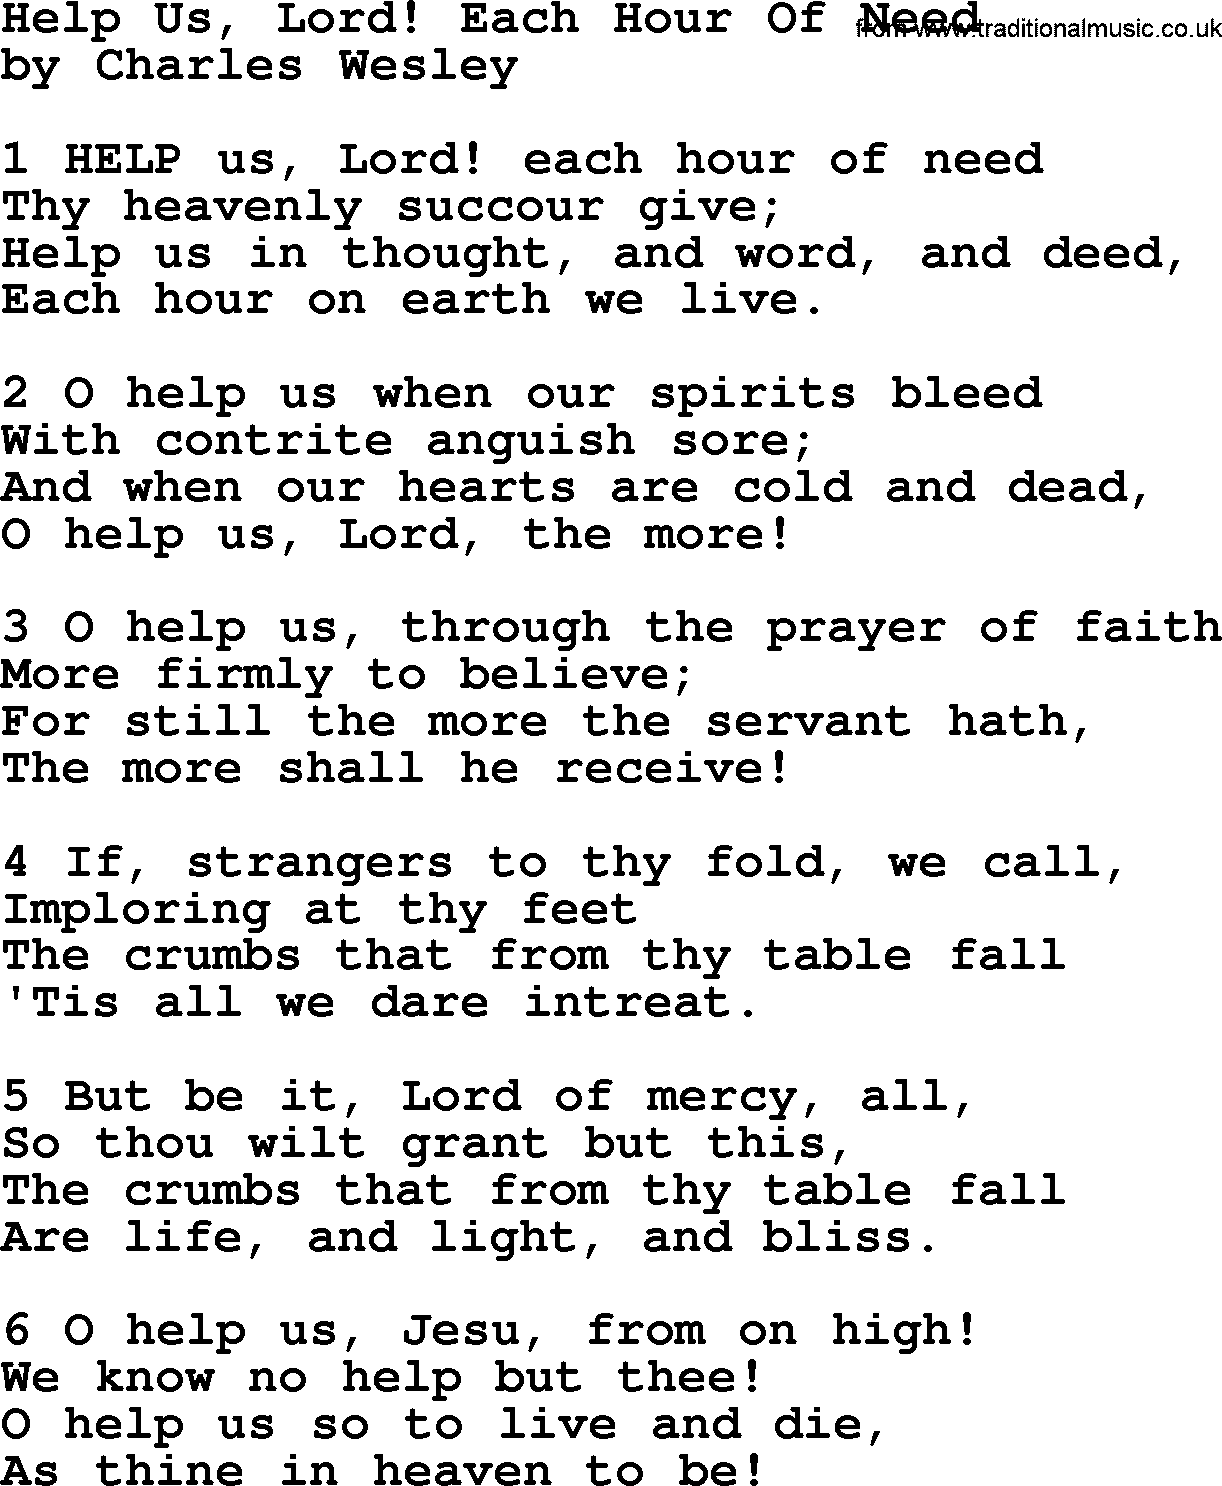 Charles Wesley hymn: Help Us, Lord! Each Hour Of Need, lyrics